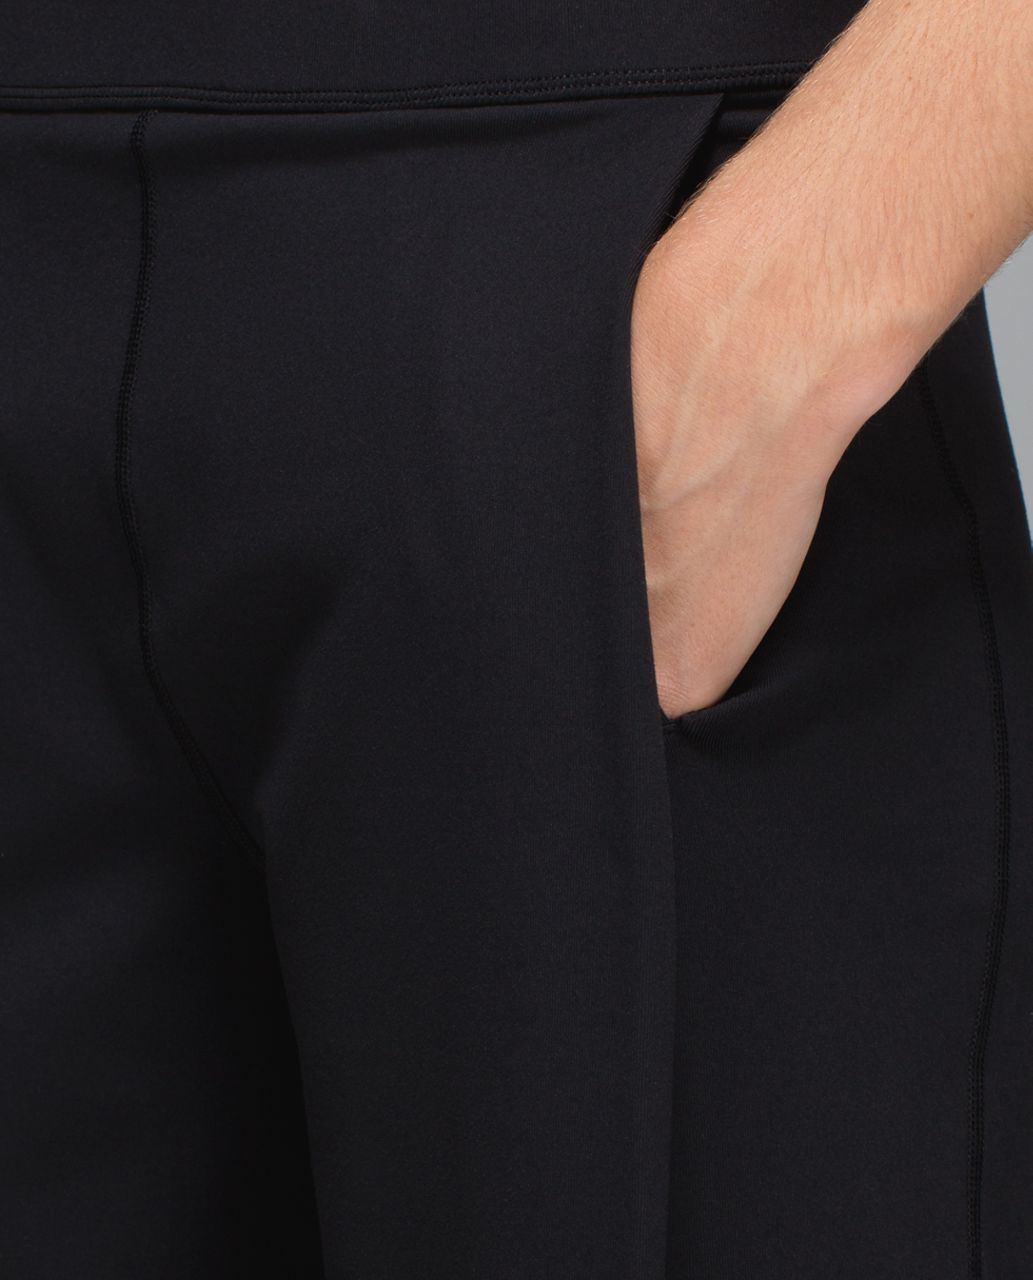 Lululemon Forward Fold Trouser *Full-On Luon - Black